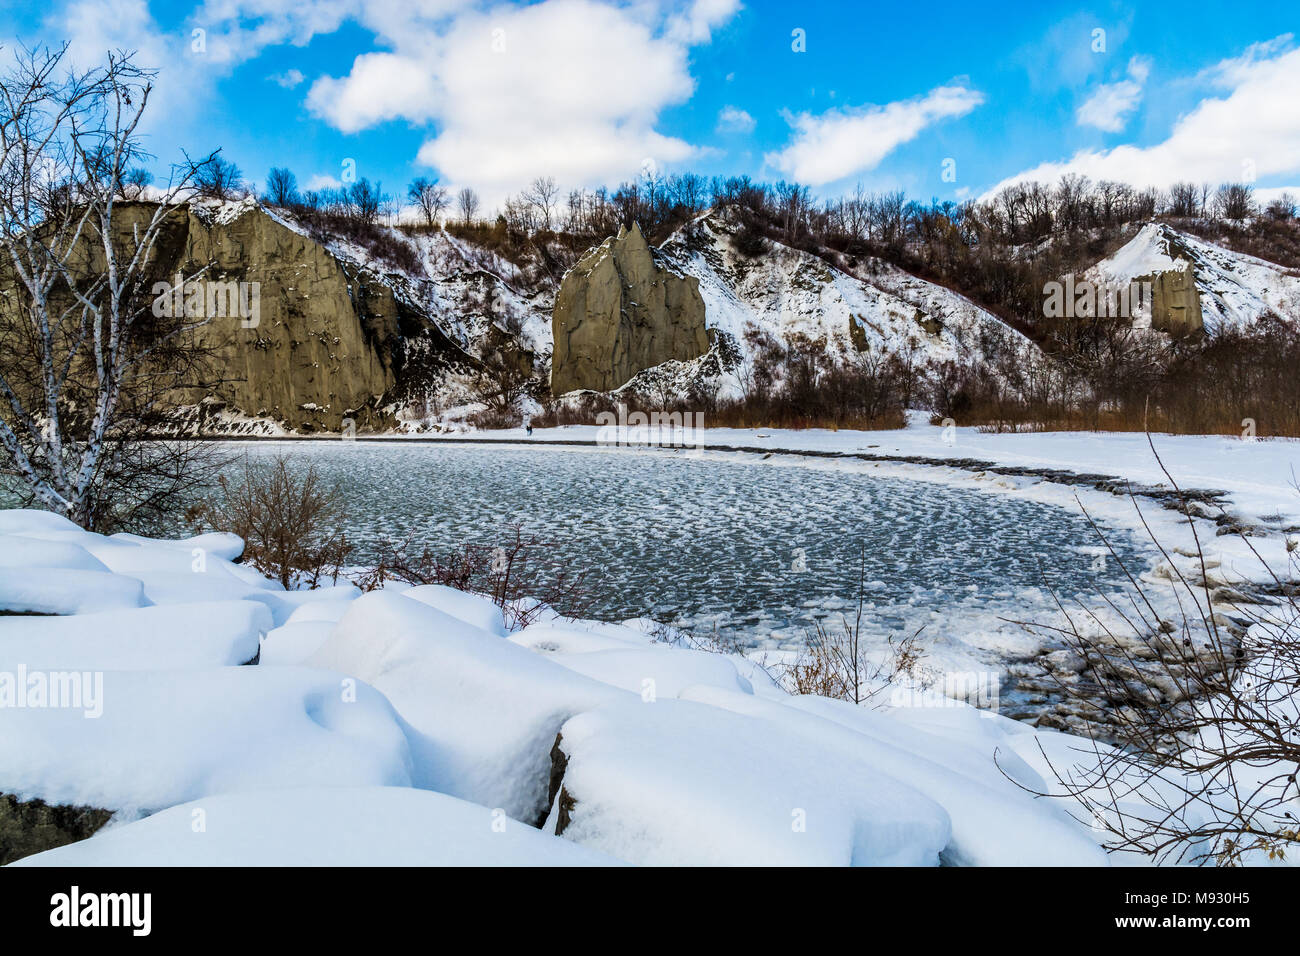 El lago Ontario en temporada de invierno mostrando verde agua helada y el terreno rocoso con rocas cubiertas de nieve blanca durante un día soleado Foto de stock